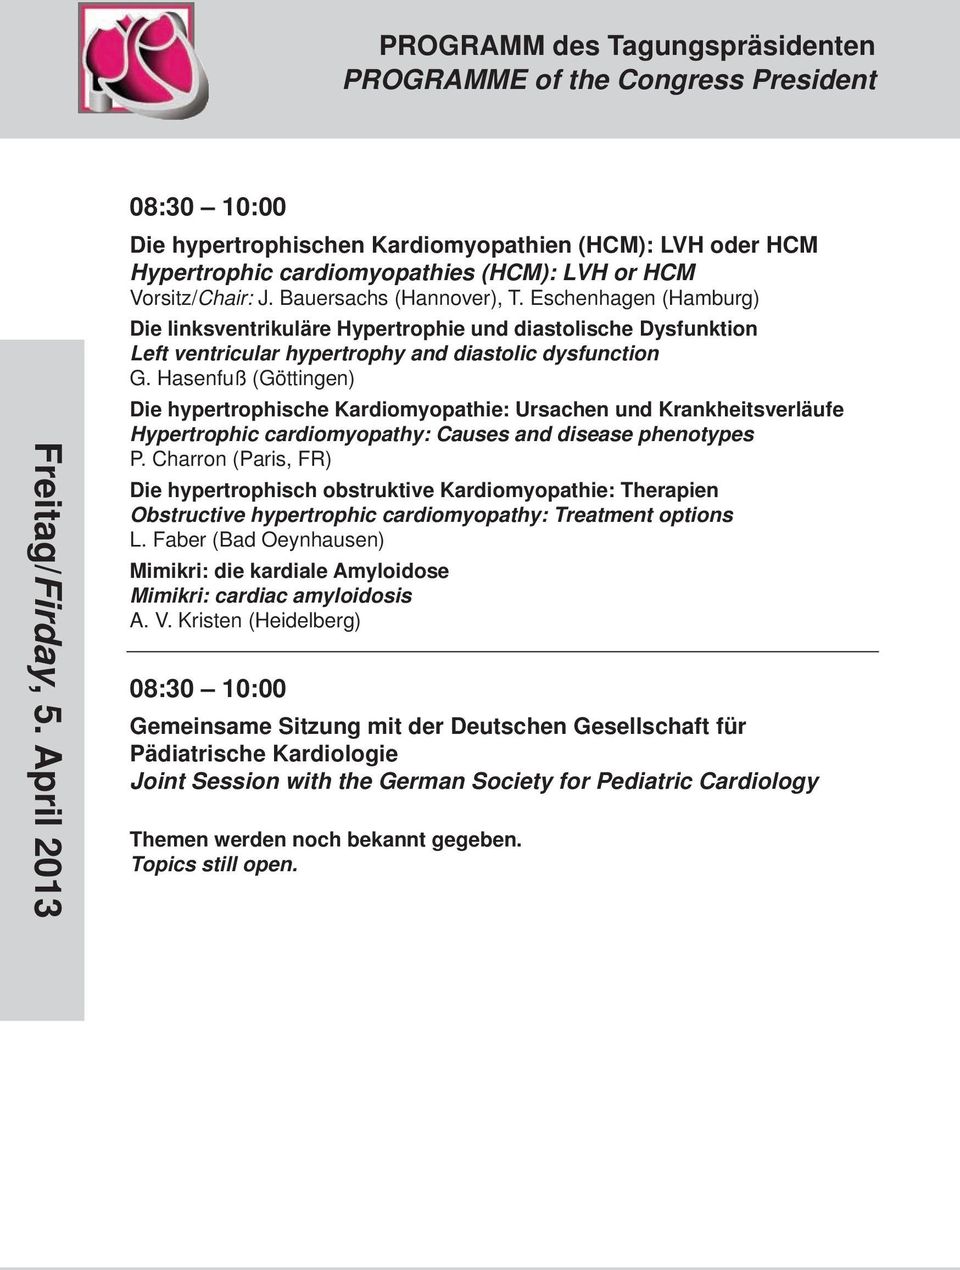 Hasenfuß (Göttingen) Die hypertrophische Kardiomyopathie: Ursachen und Krankheitsverläufe Hypertrophic cardiomyopathy: Causes and disease phenotypes P.